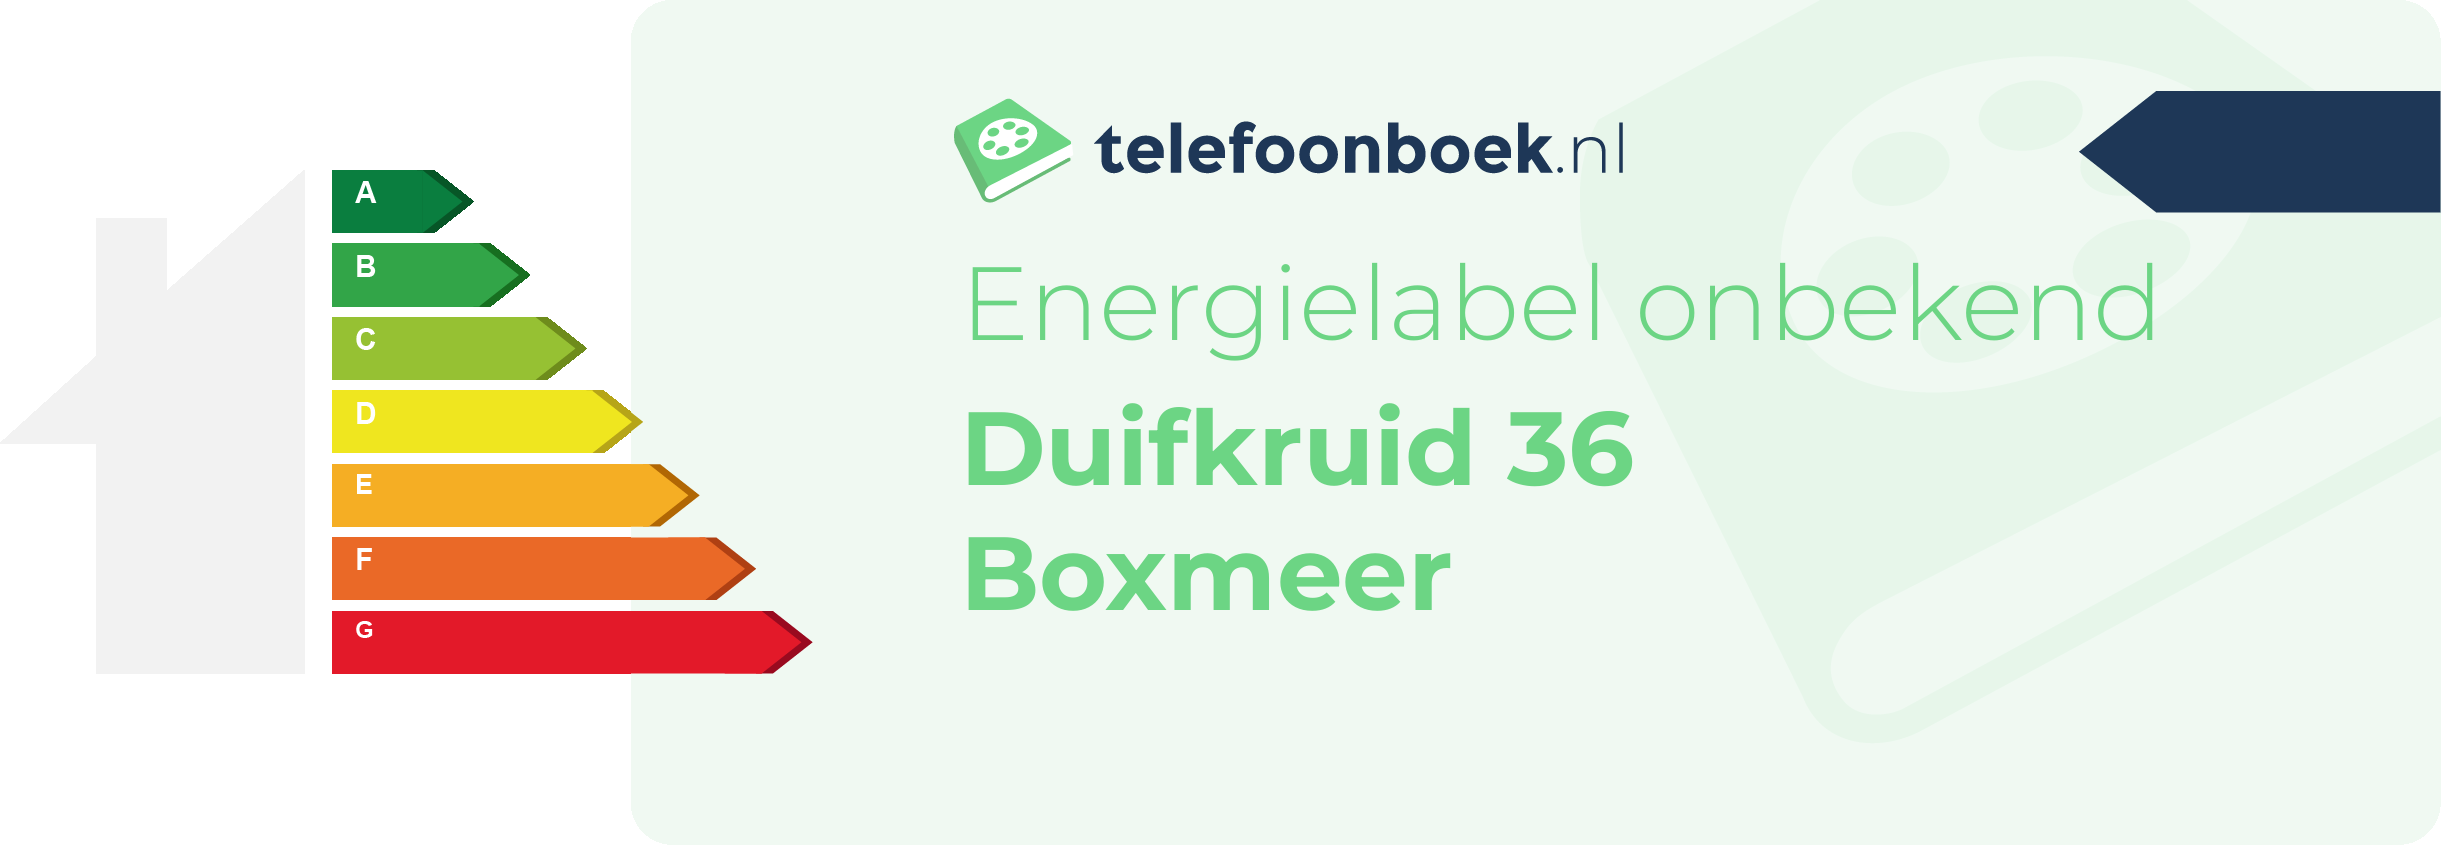 Energielabel Duifkruid 36 Boxmeer